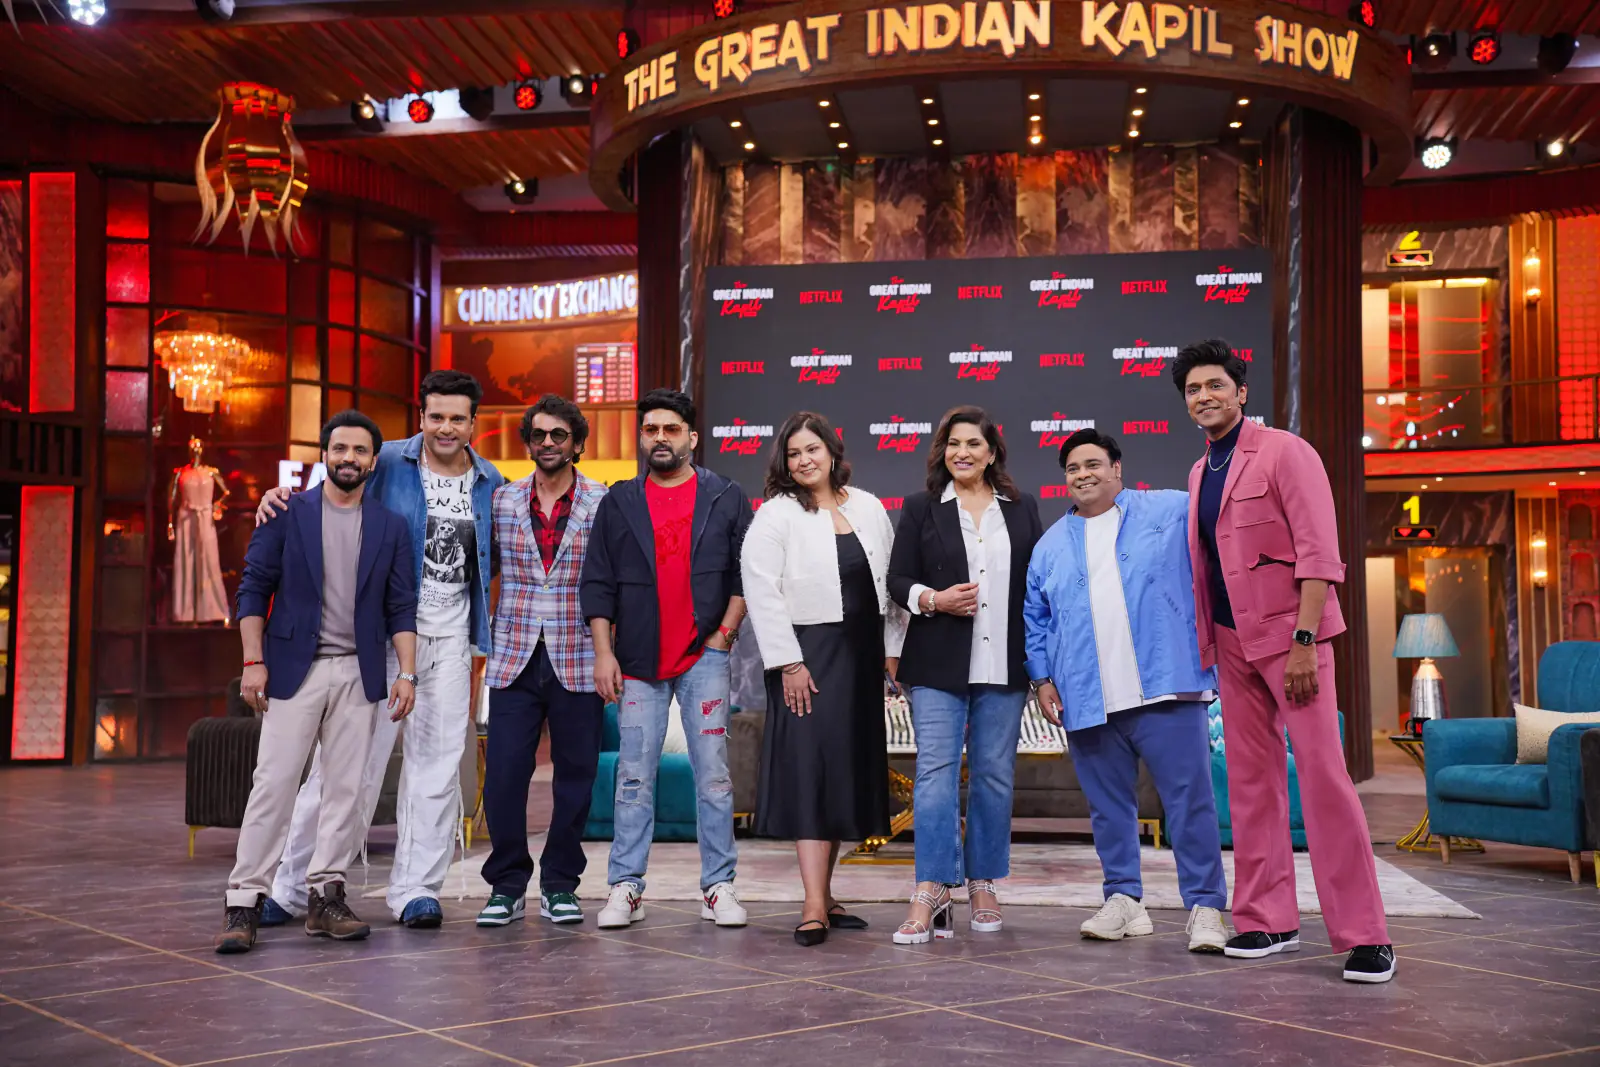 'द ग्रेट इंडियन कपिल शो' में सचिन वी कुंभार का धमाका